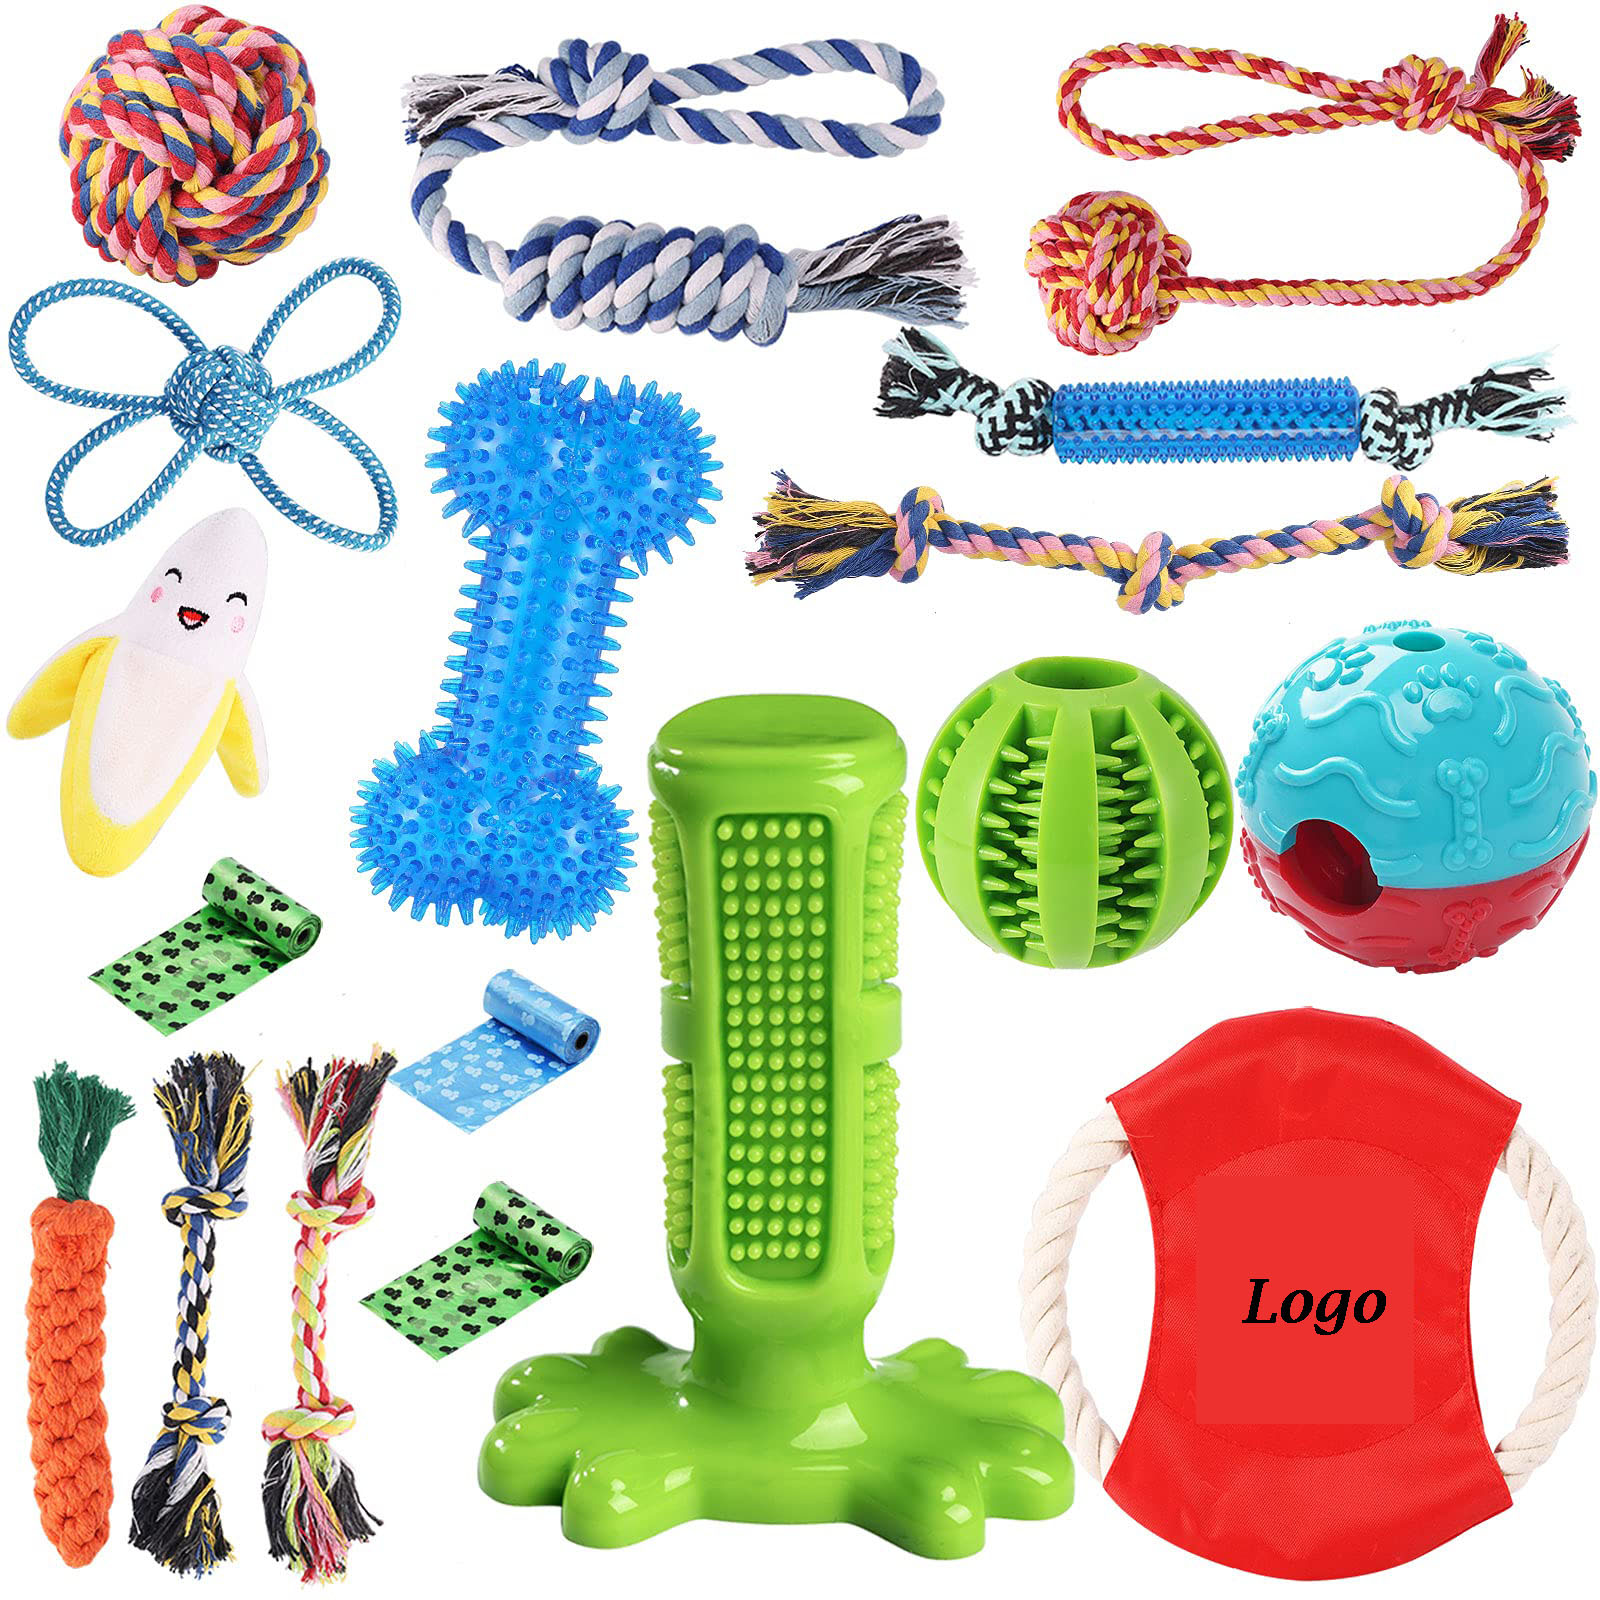 18 Pack Dog Chew Toys Kit foar Puppy